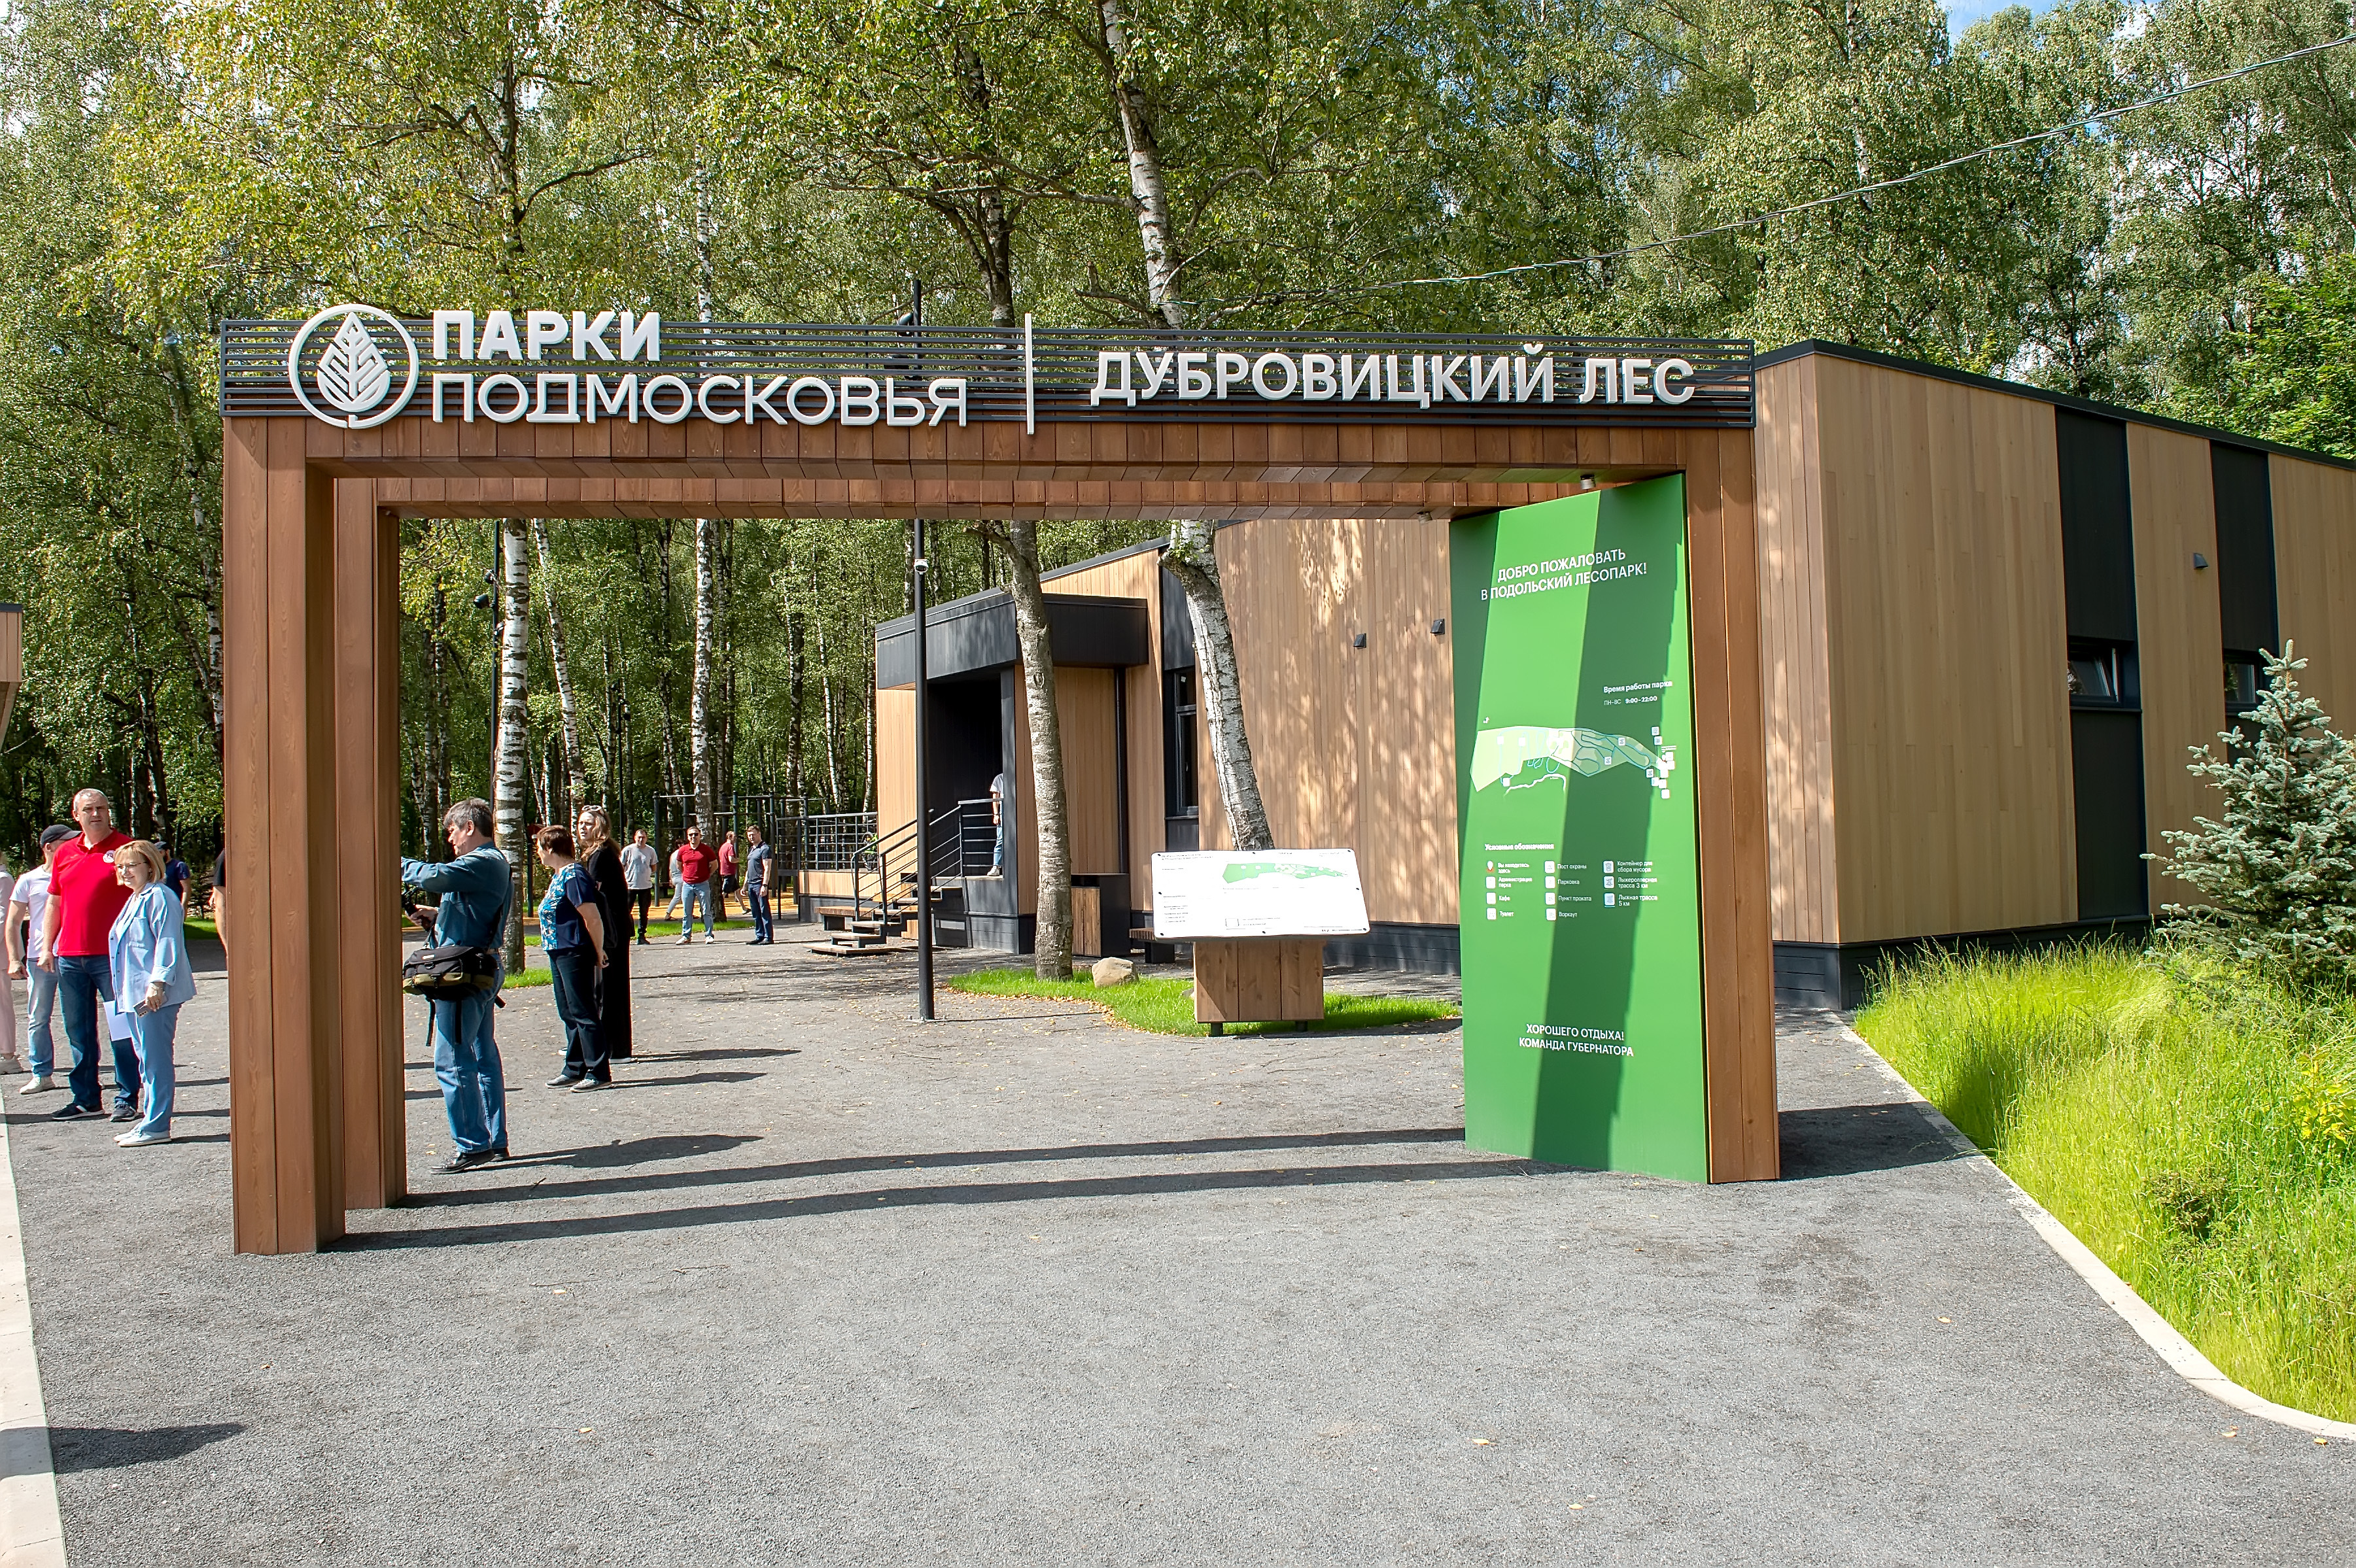 Торжественное открытие обновленного лесопарка «Дубровицкий лес» в Подольске состоится 30 июля